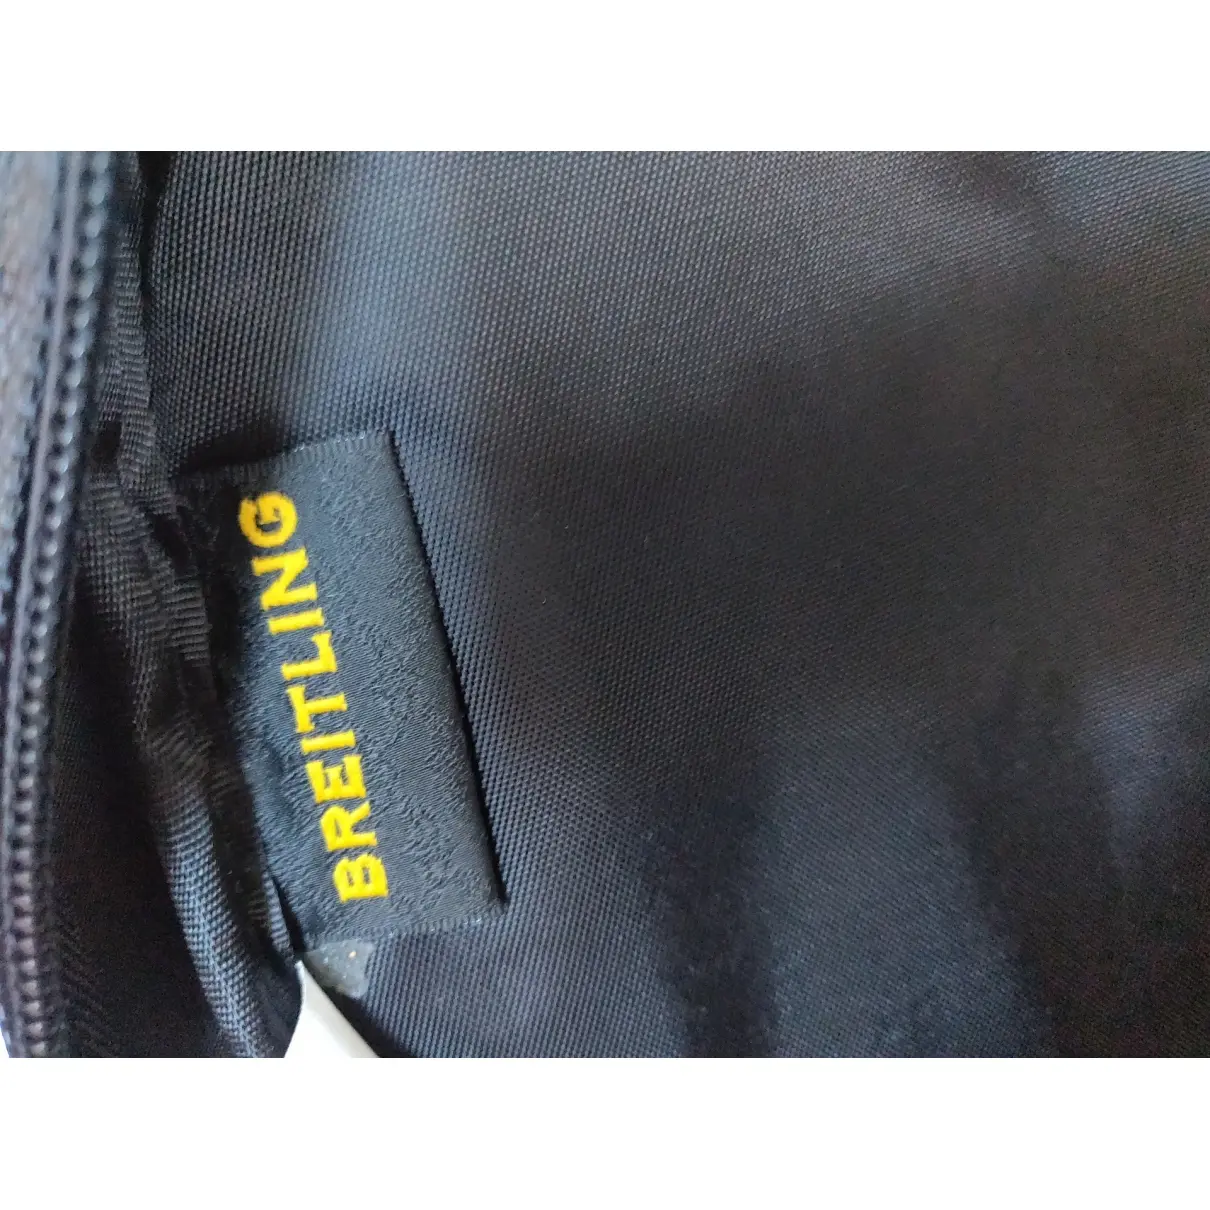 Buy Breitling Cloth bag online